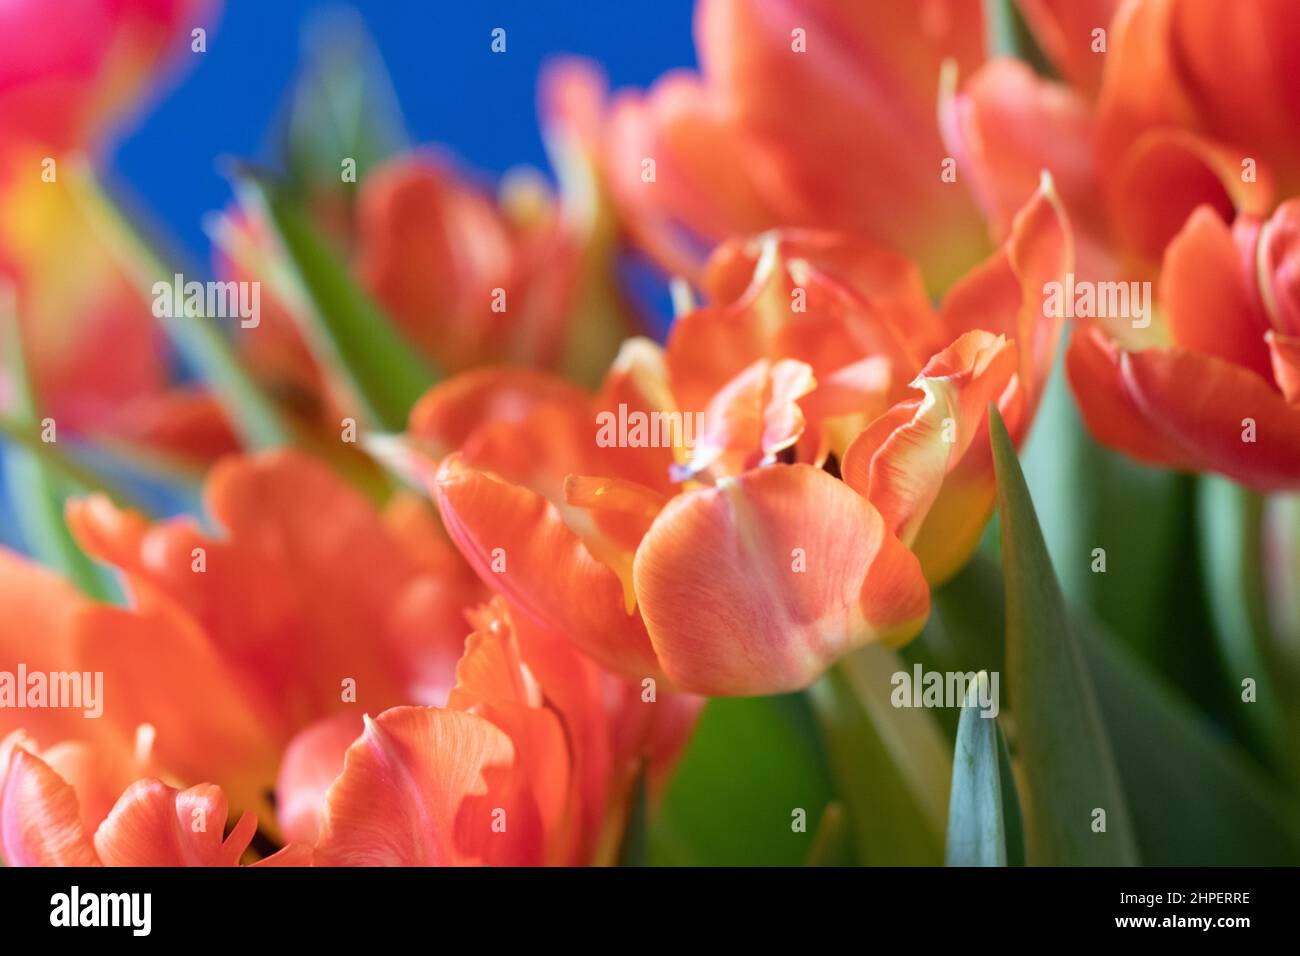 Tulipes colorées sur fond bleu avec une faible profondeur de champ pour se concentrer sur les pétales Banque D'Images